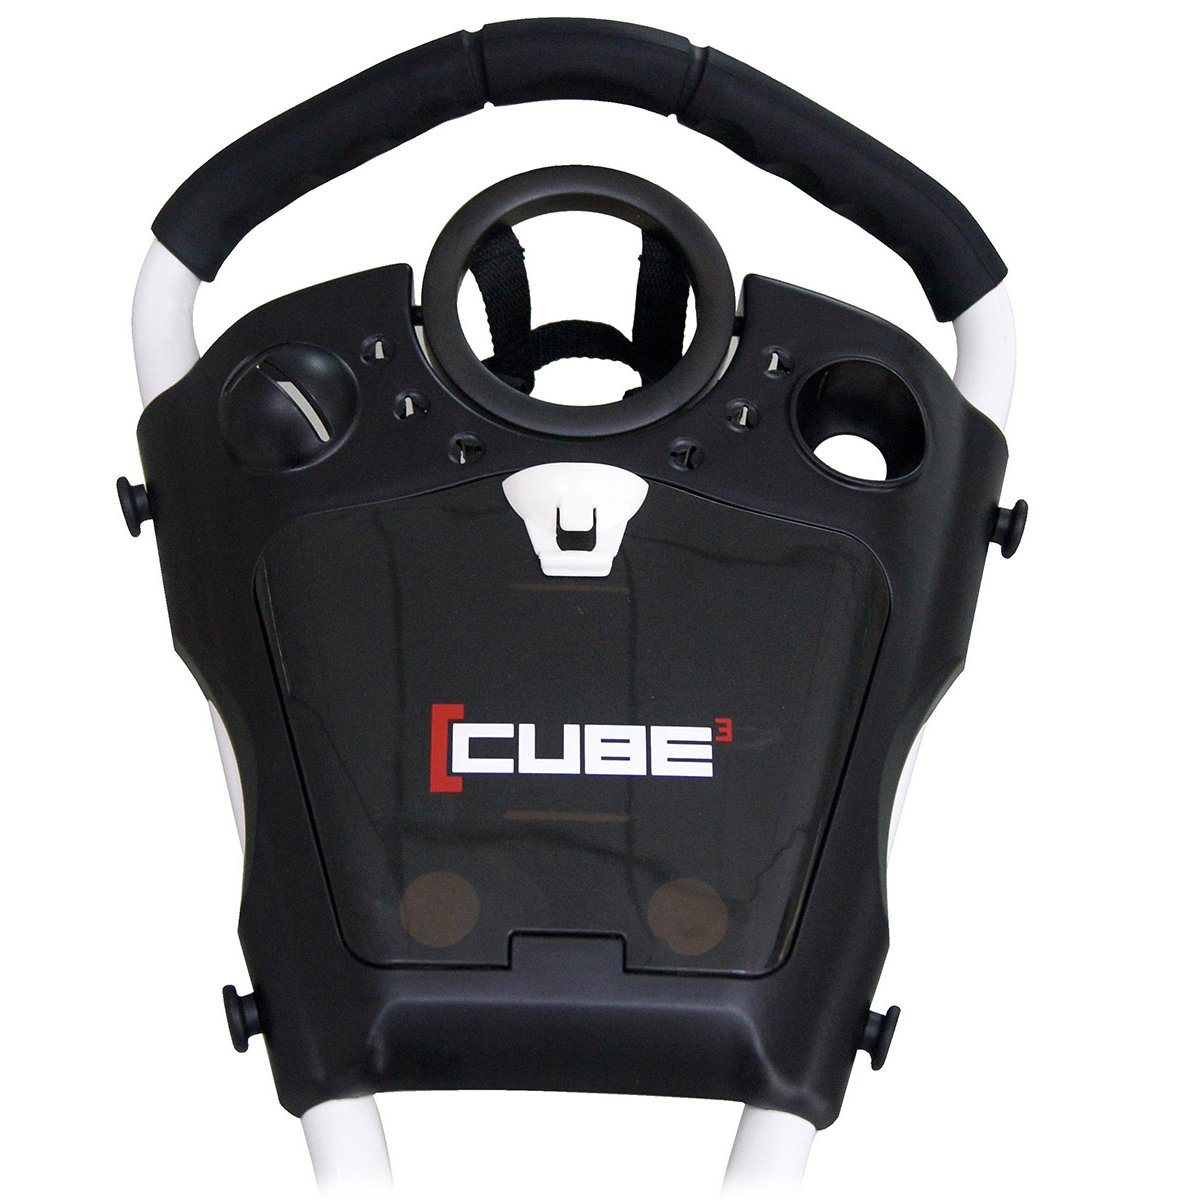 Cube Cart 3.0 Carrito de golf de 3 ruedas CARROS DE EMPUJE DE 3 RUEDAS BOSTON GOLF